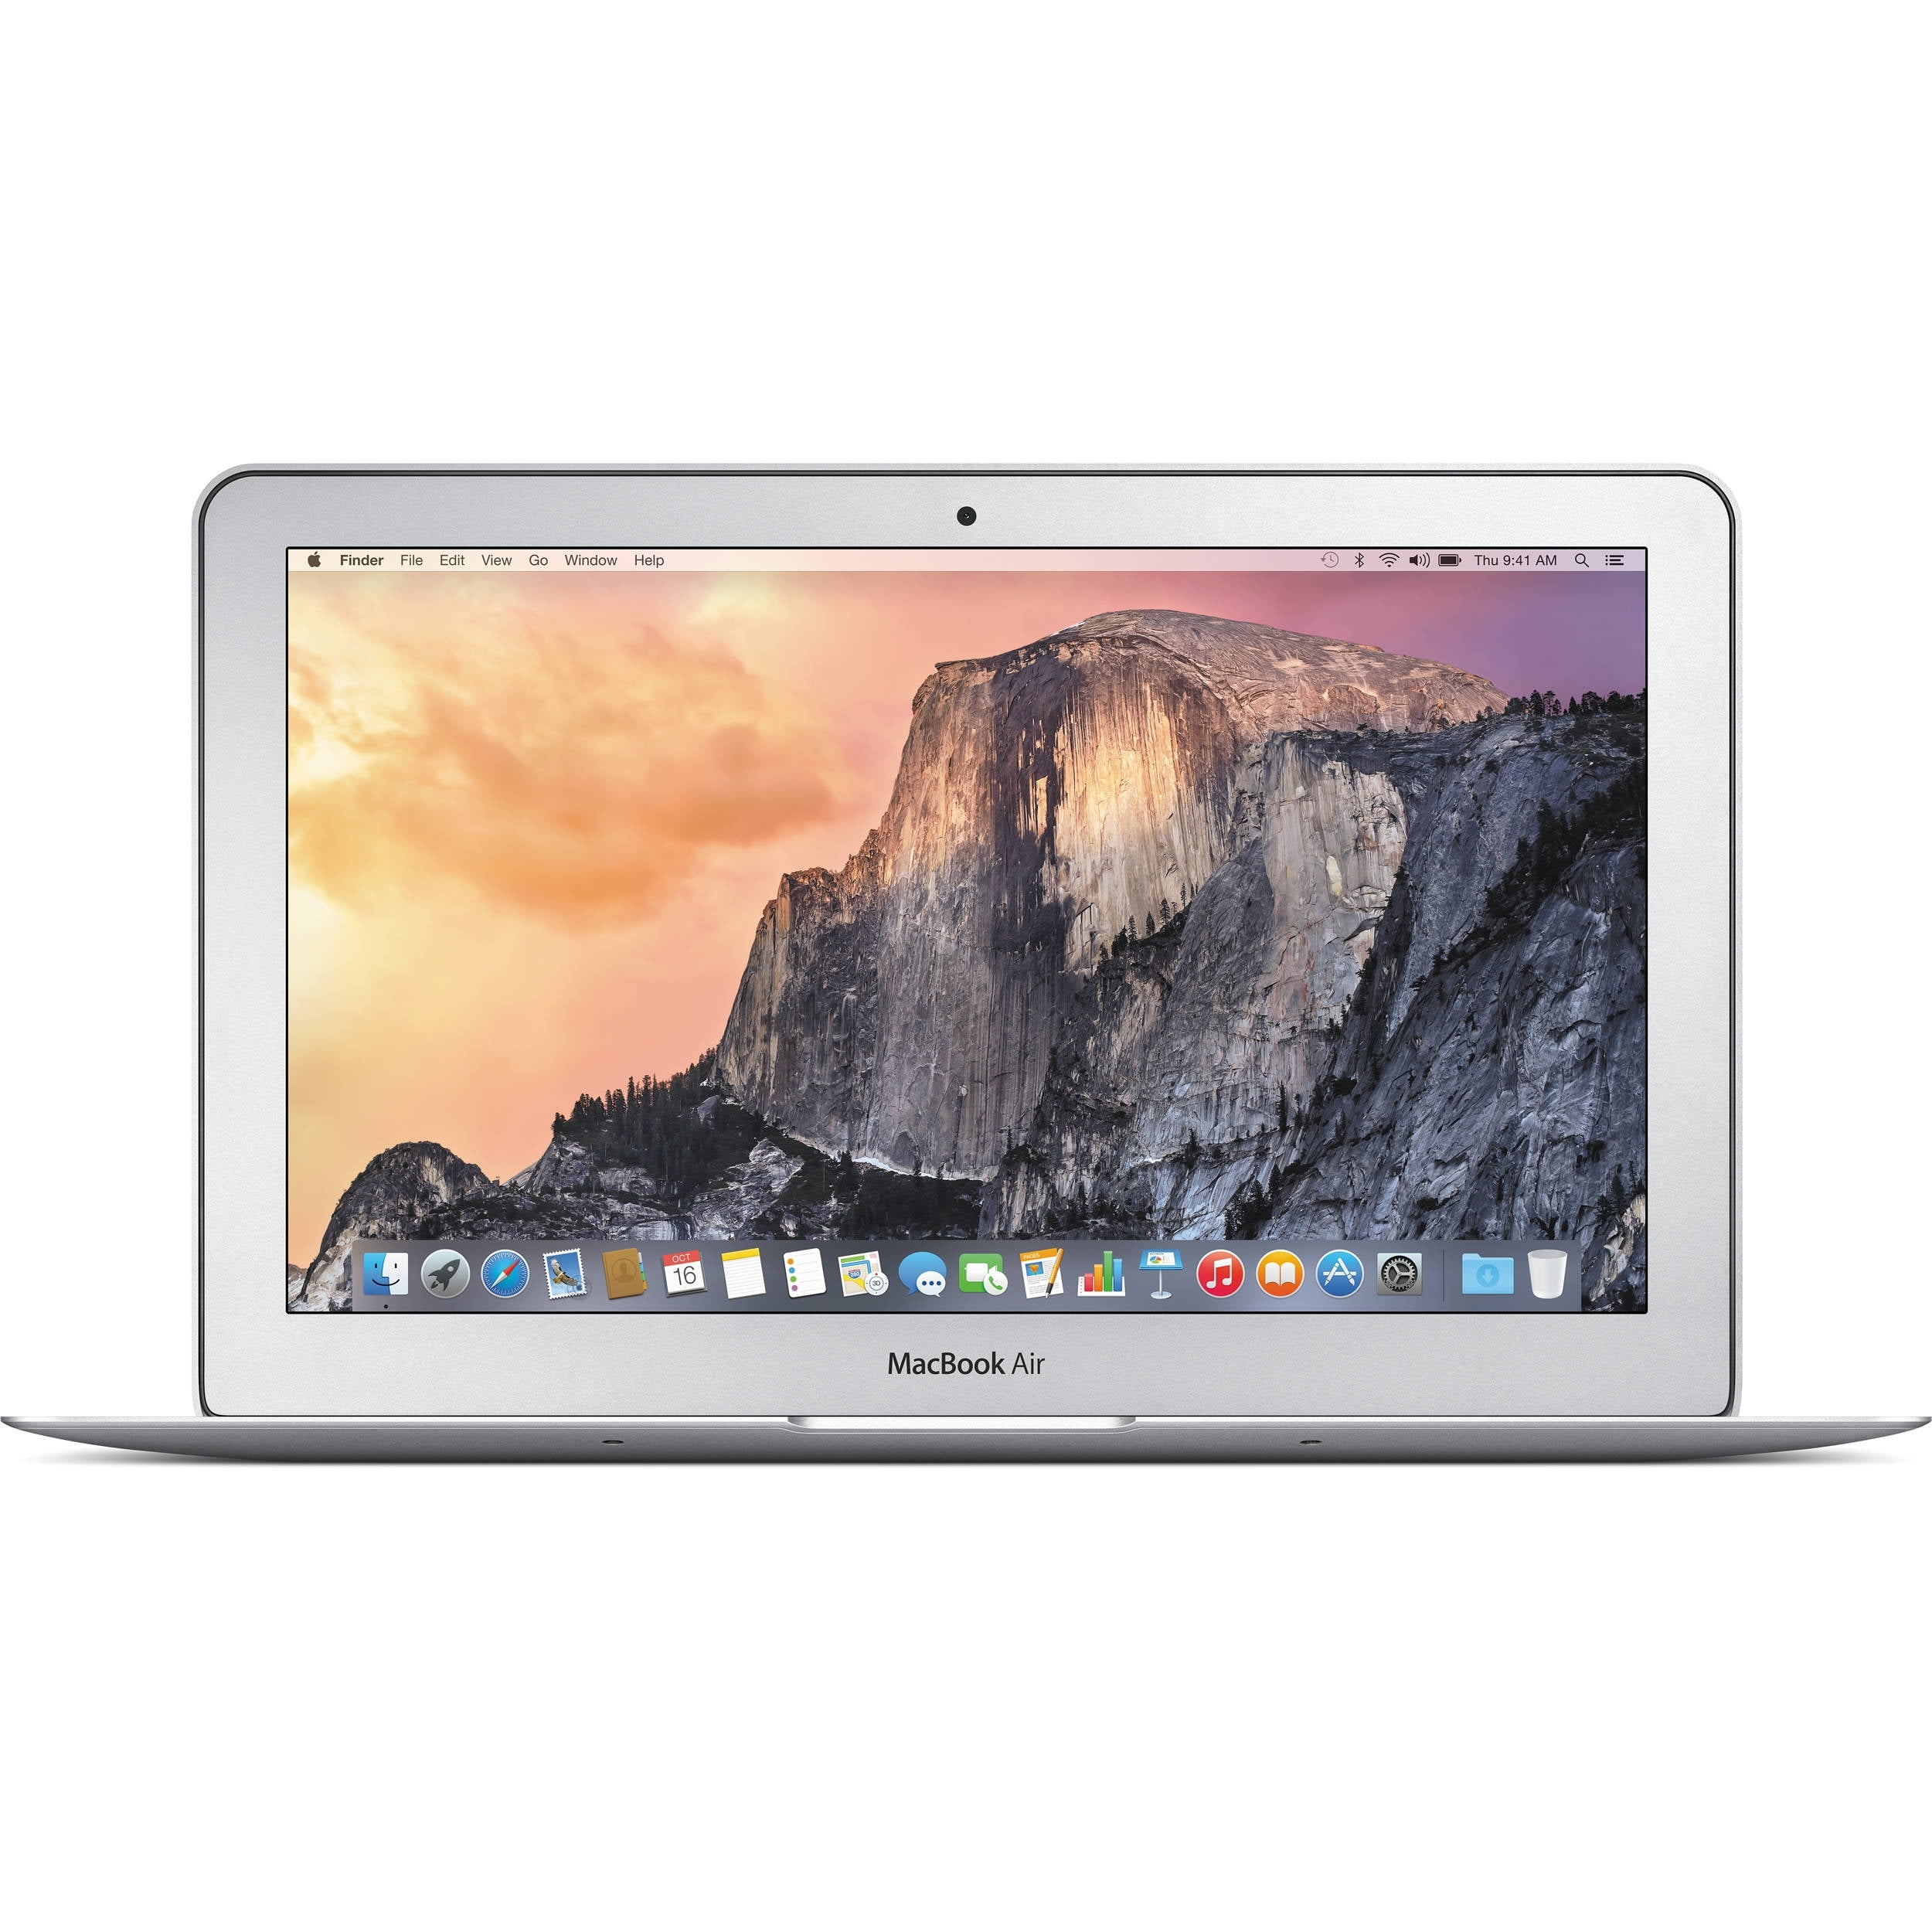 Used Apple MacBook Air MJVM2LL/A Intel Core i5-5250U X2 1.6 